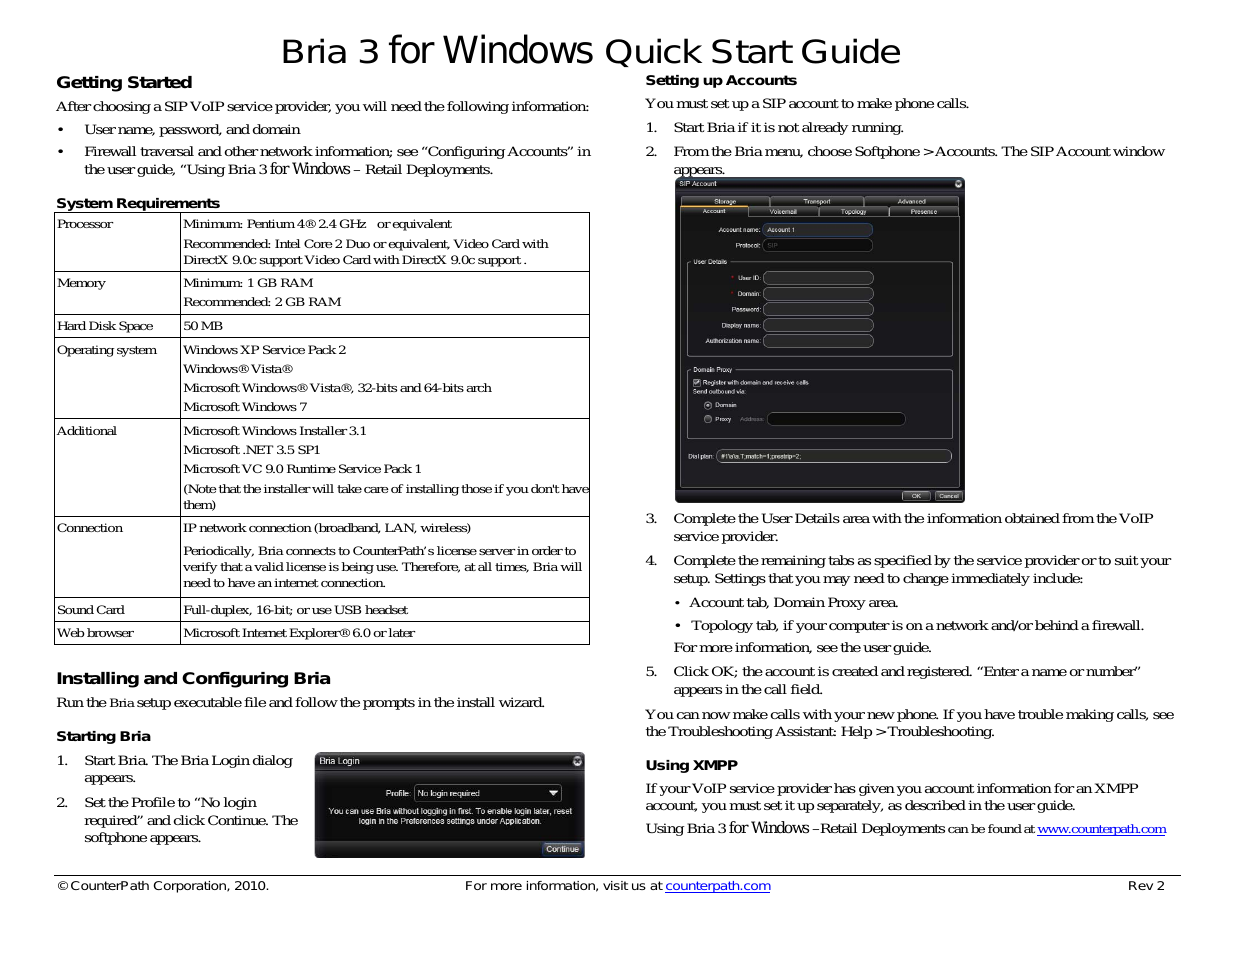 Bria 3.1 for Windows Quick Start Guide